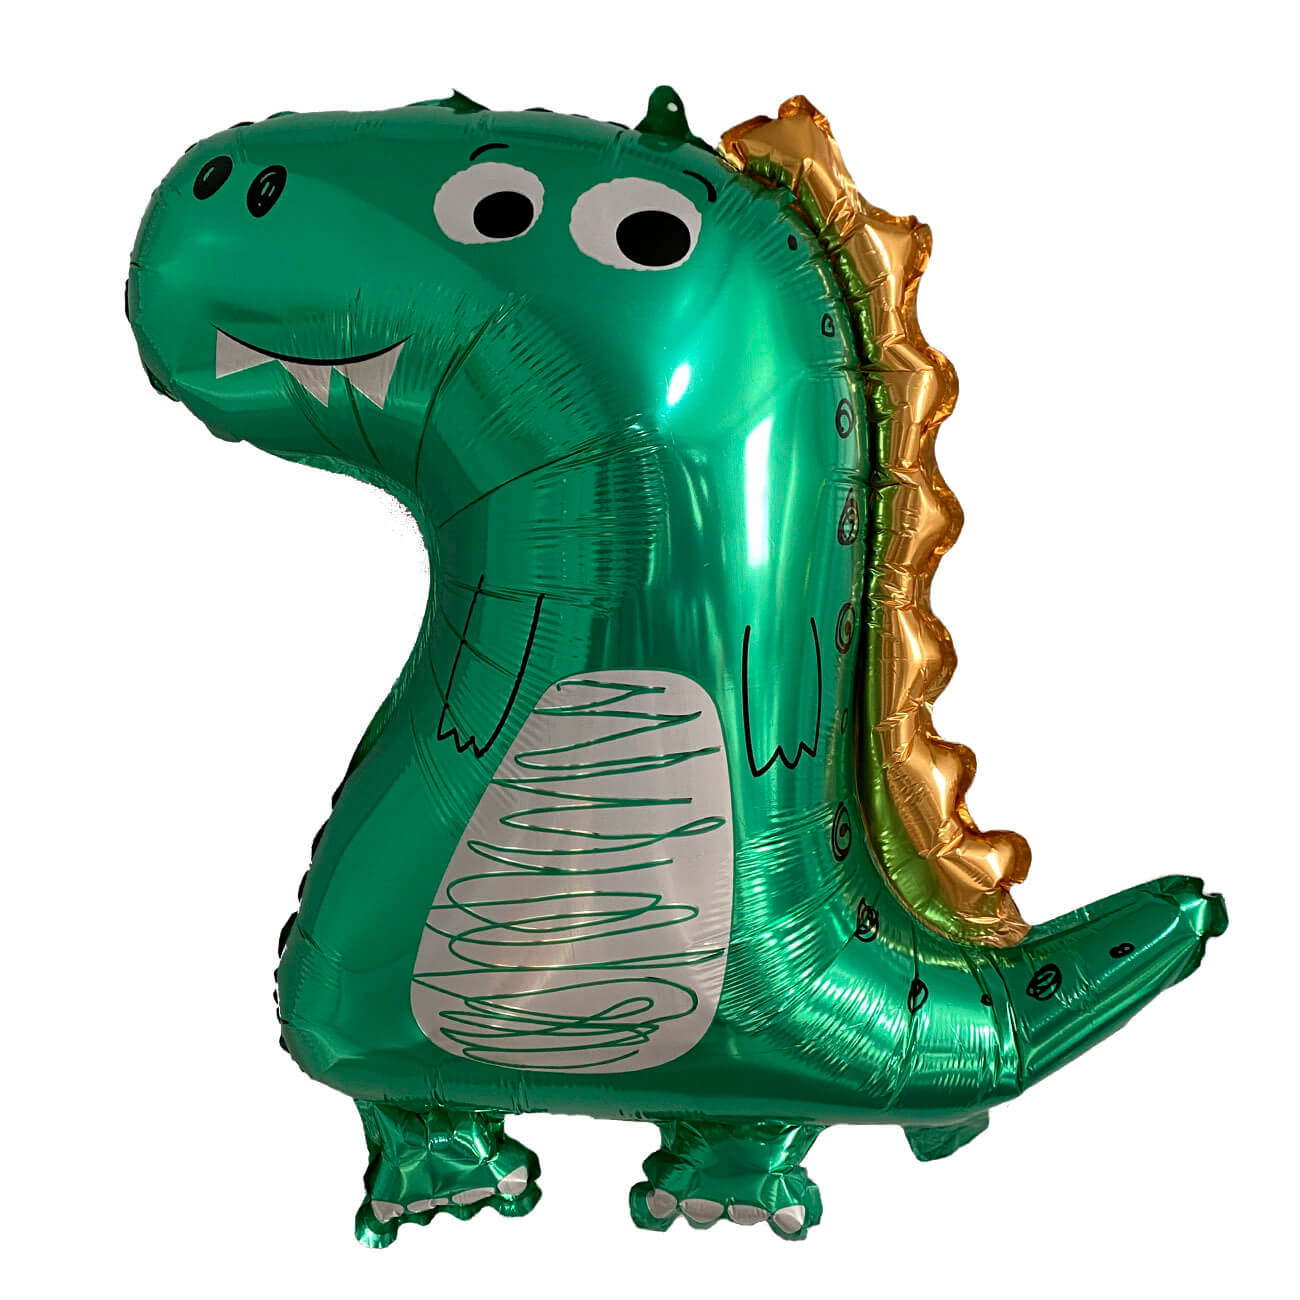 Шар воздушный, 70х59 см, фольга, зеленый, Динозавр, Dino воздушный шар